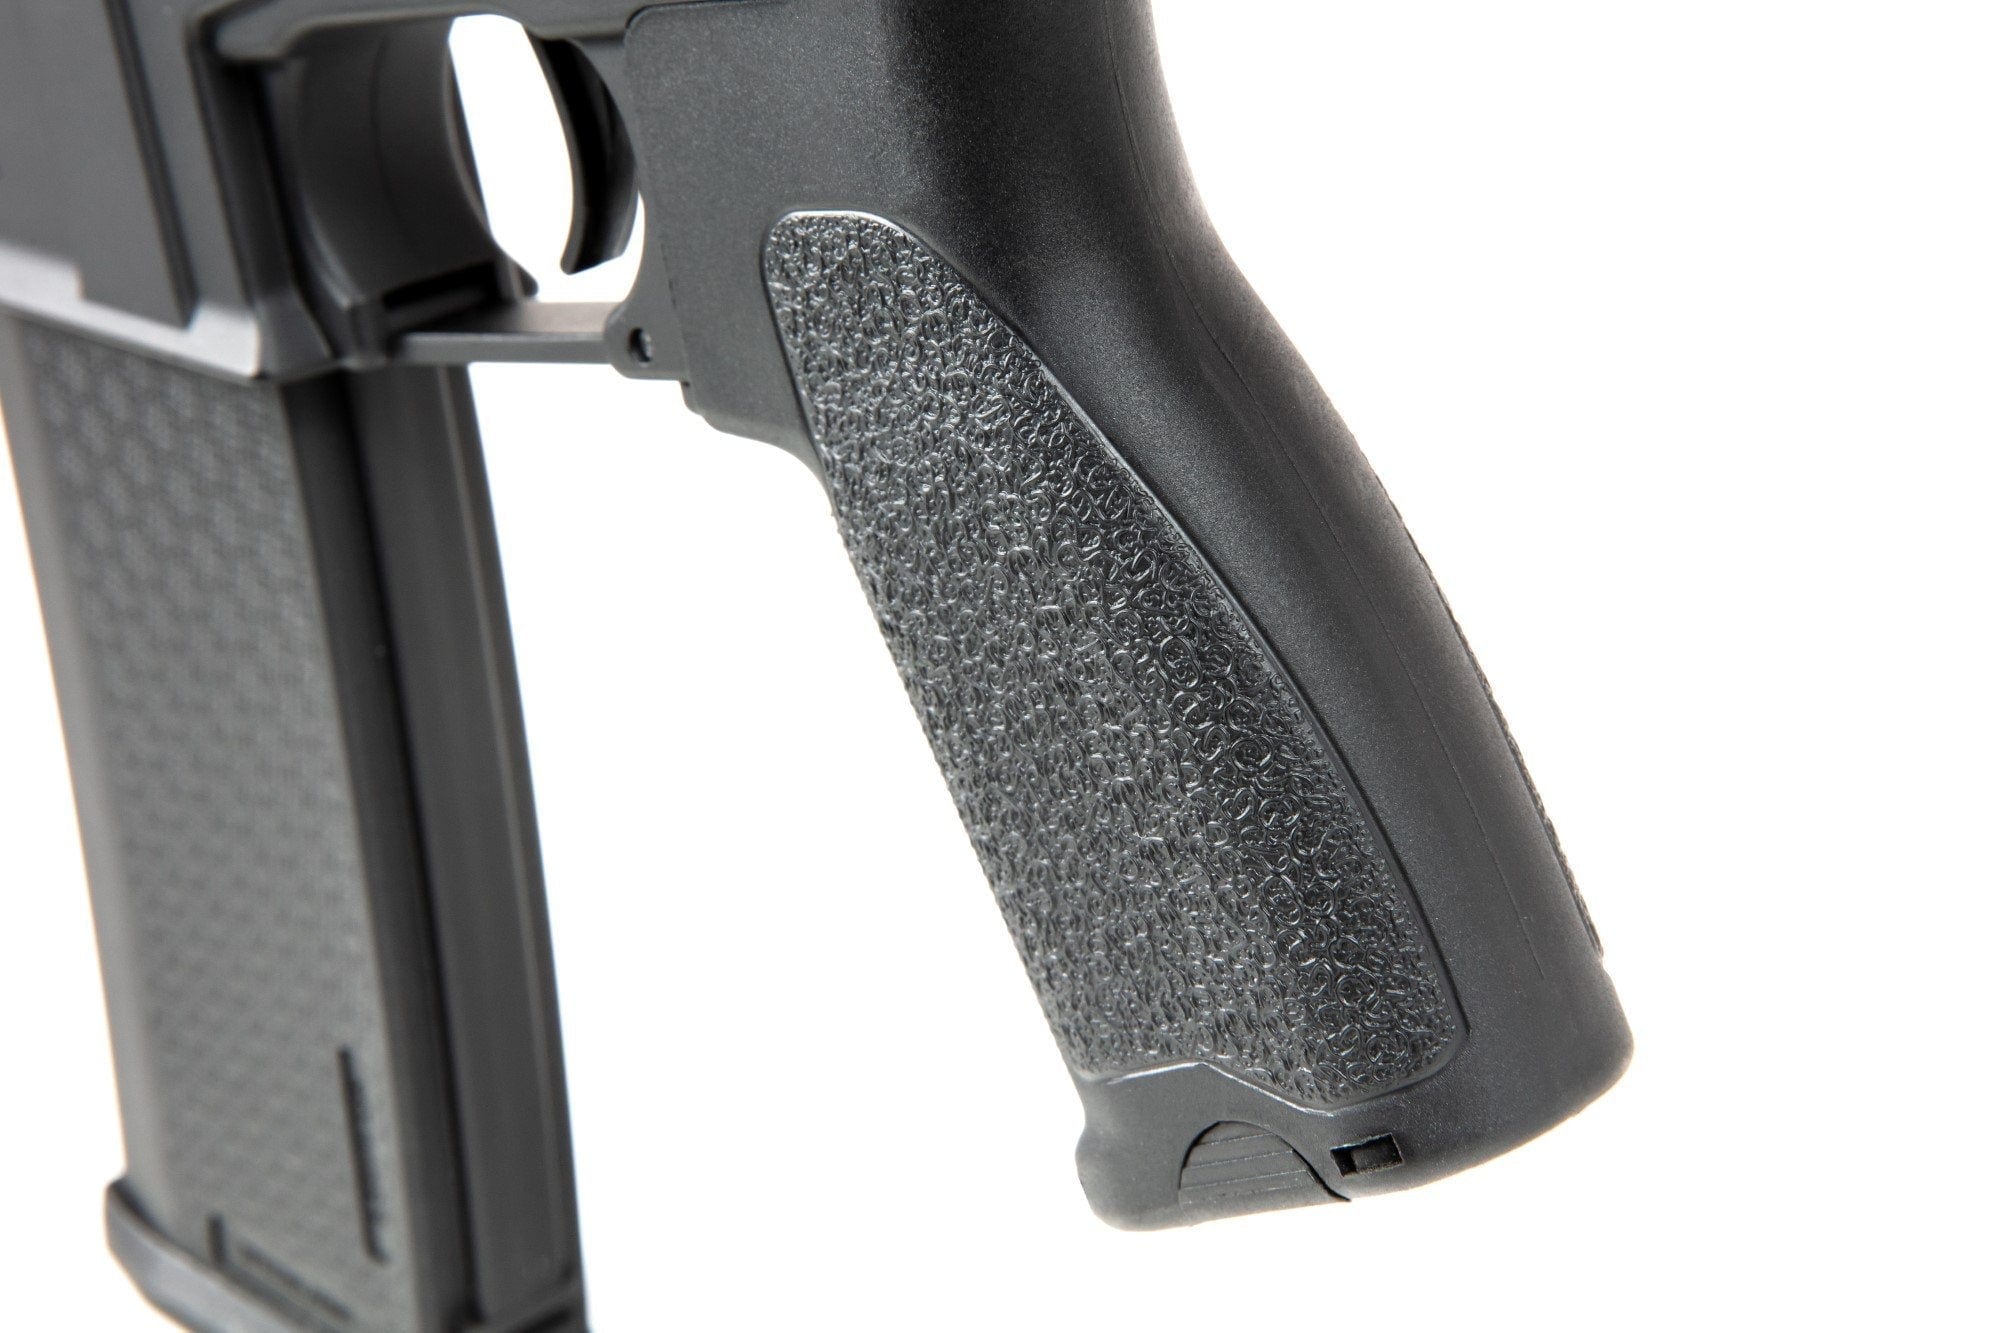 RRA SA-E04 EDGE ™ Carbine Replica - Black by Specna Arms on Airsoft Mania Europe